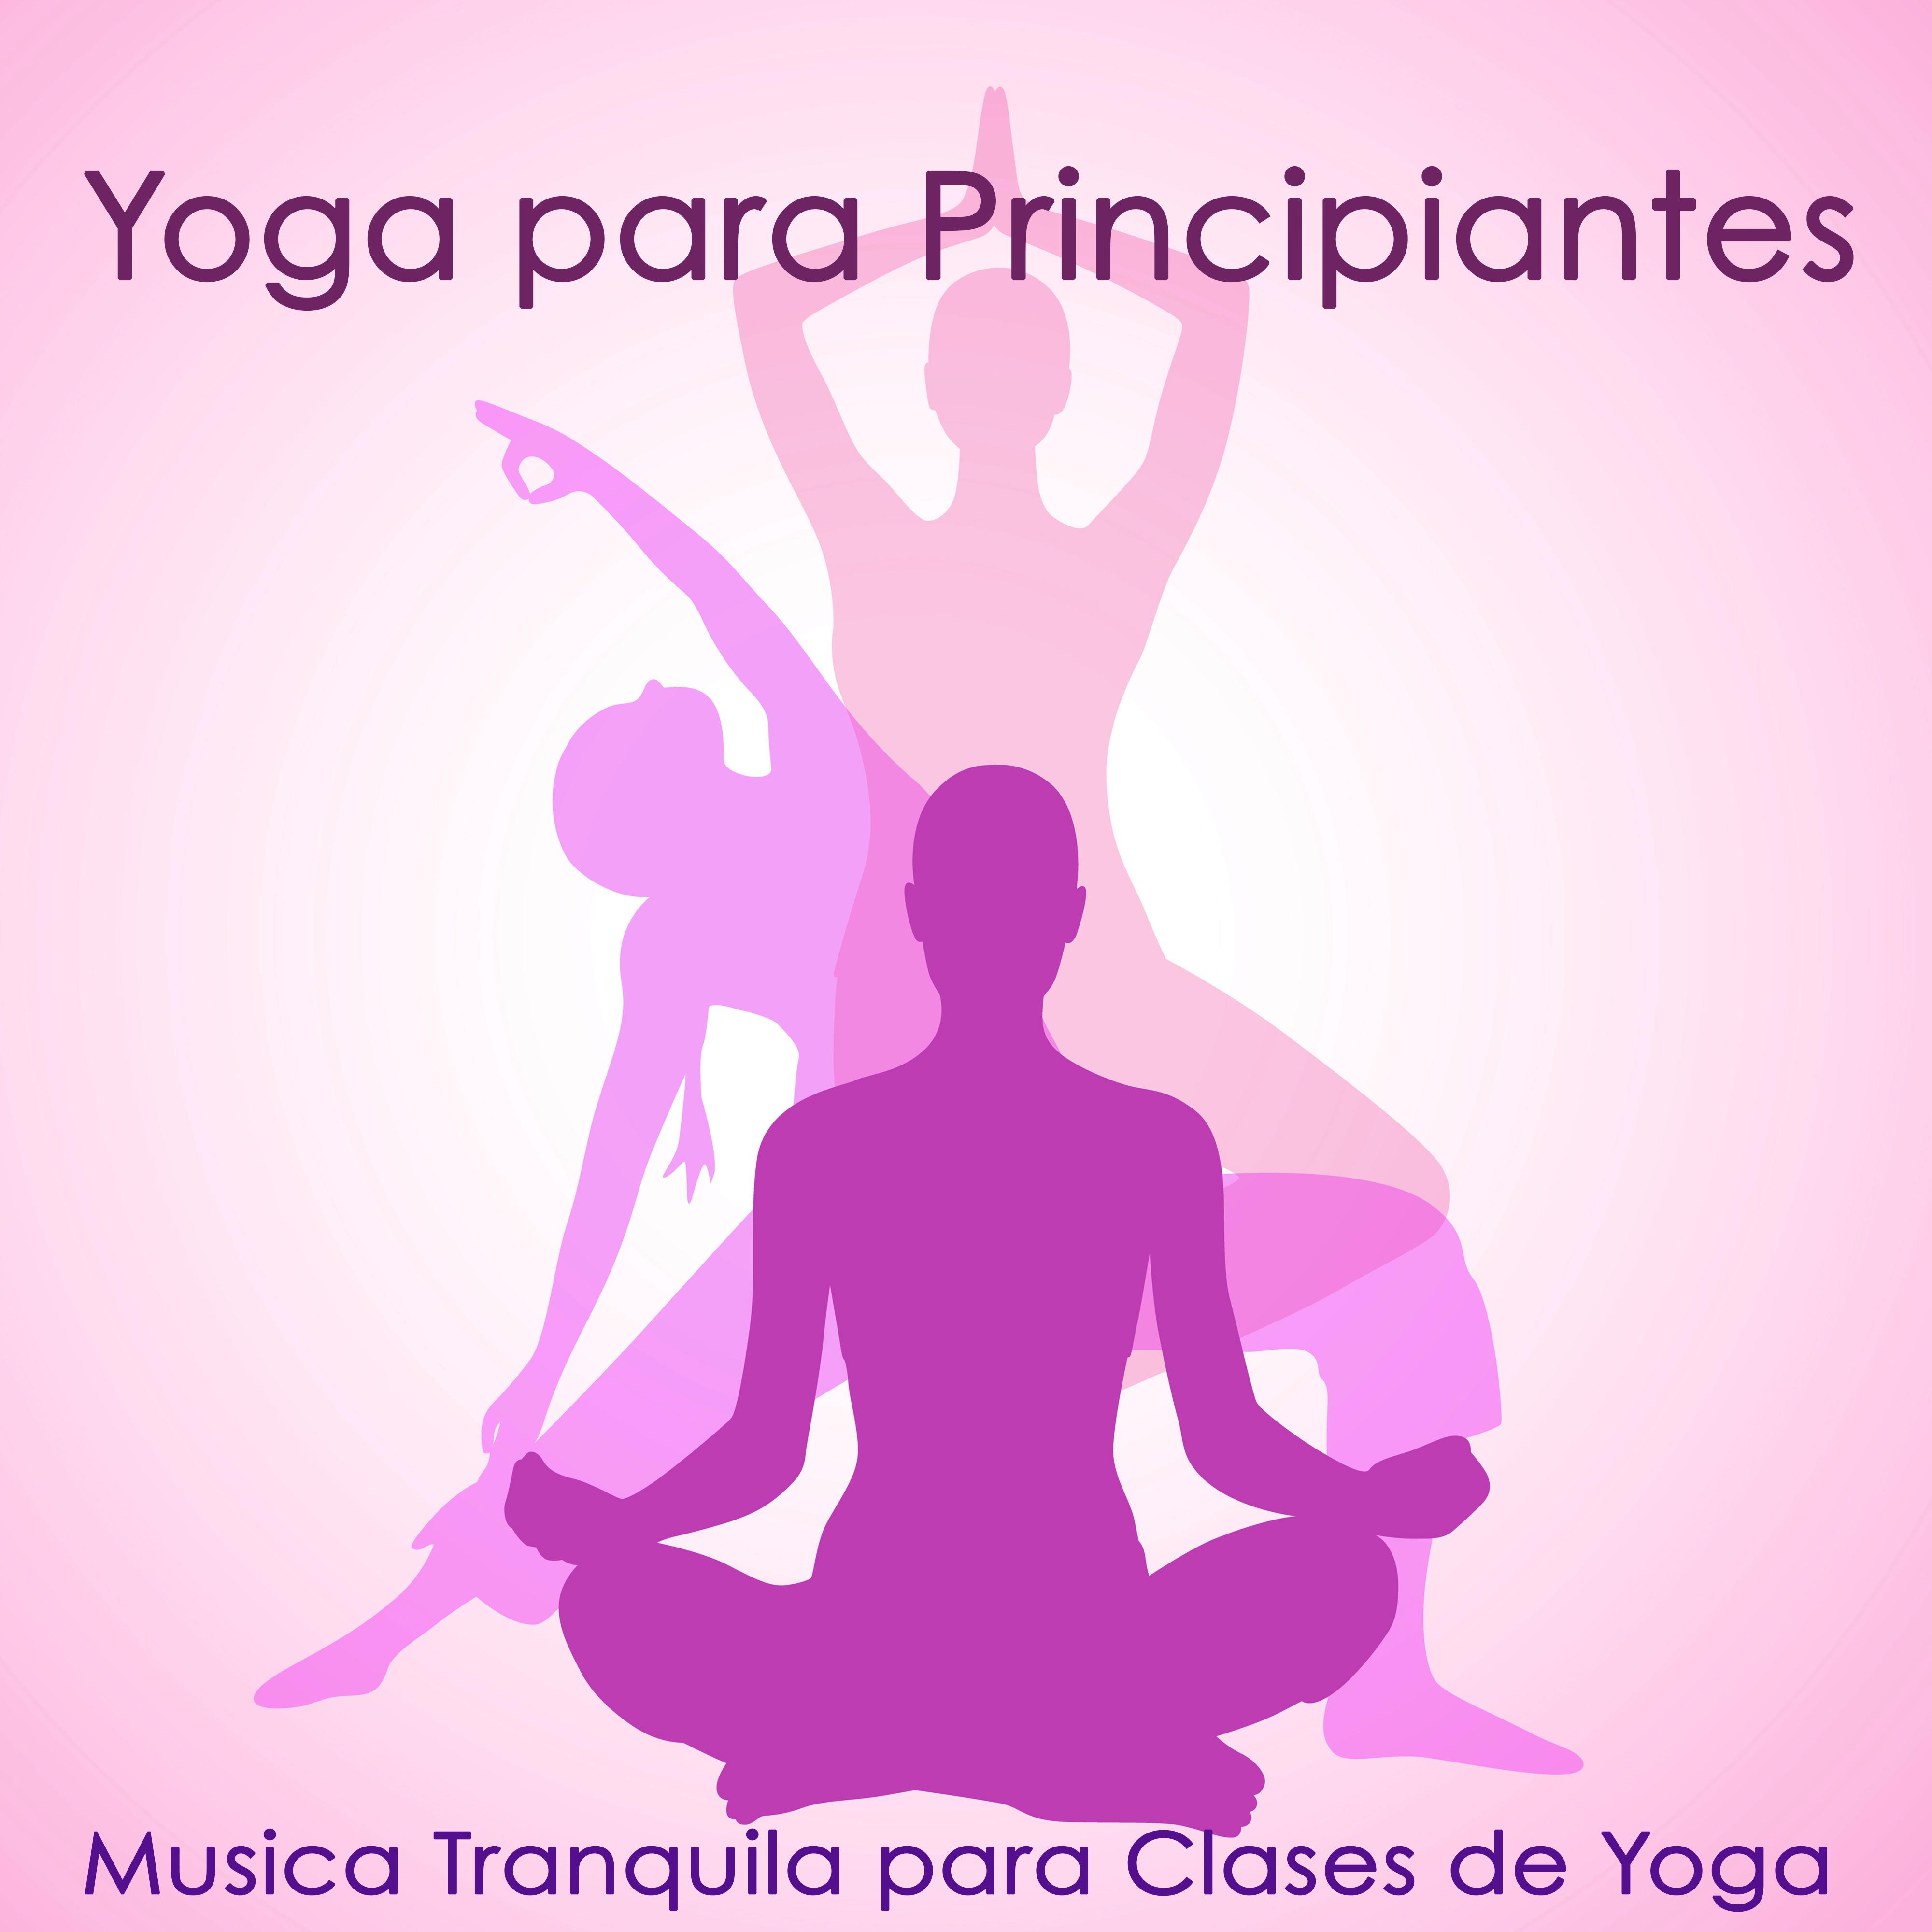 Yoga para Principiantes – Musica Tranquila para Clases de Yoga, Entrenamiento y Posturas de Yoga